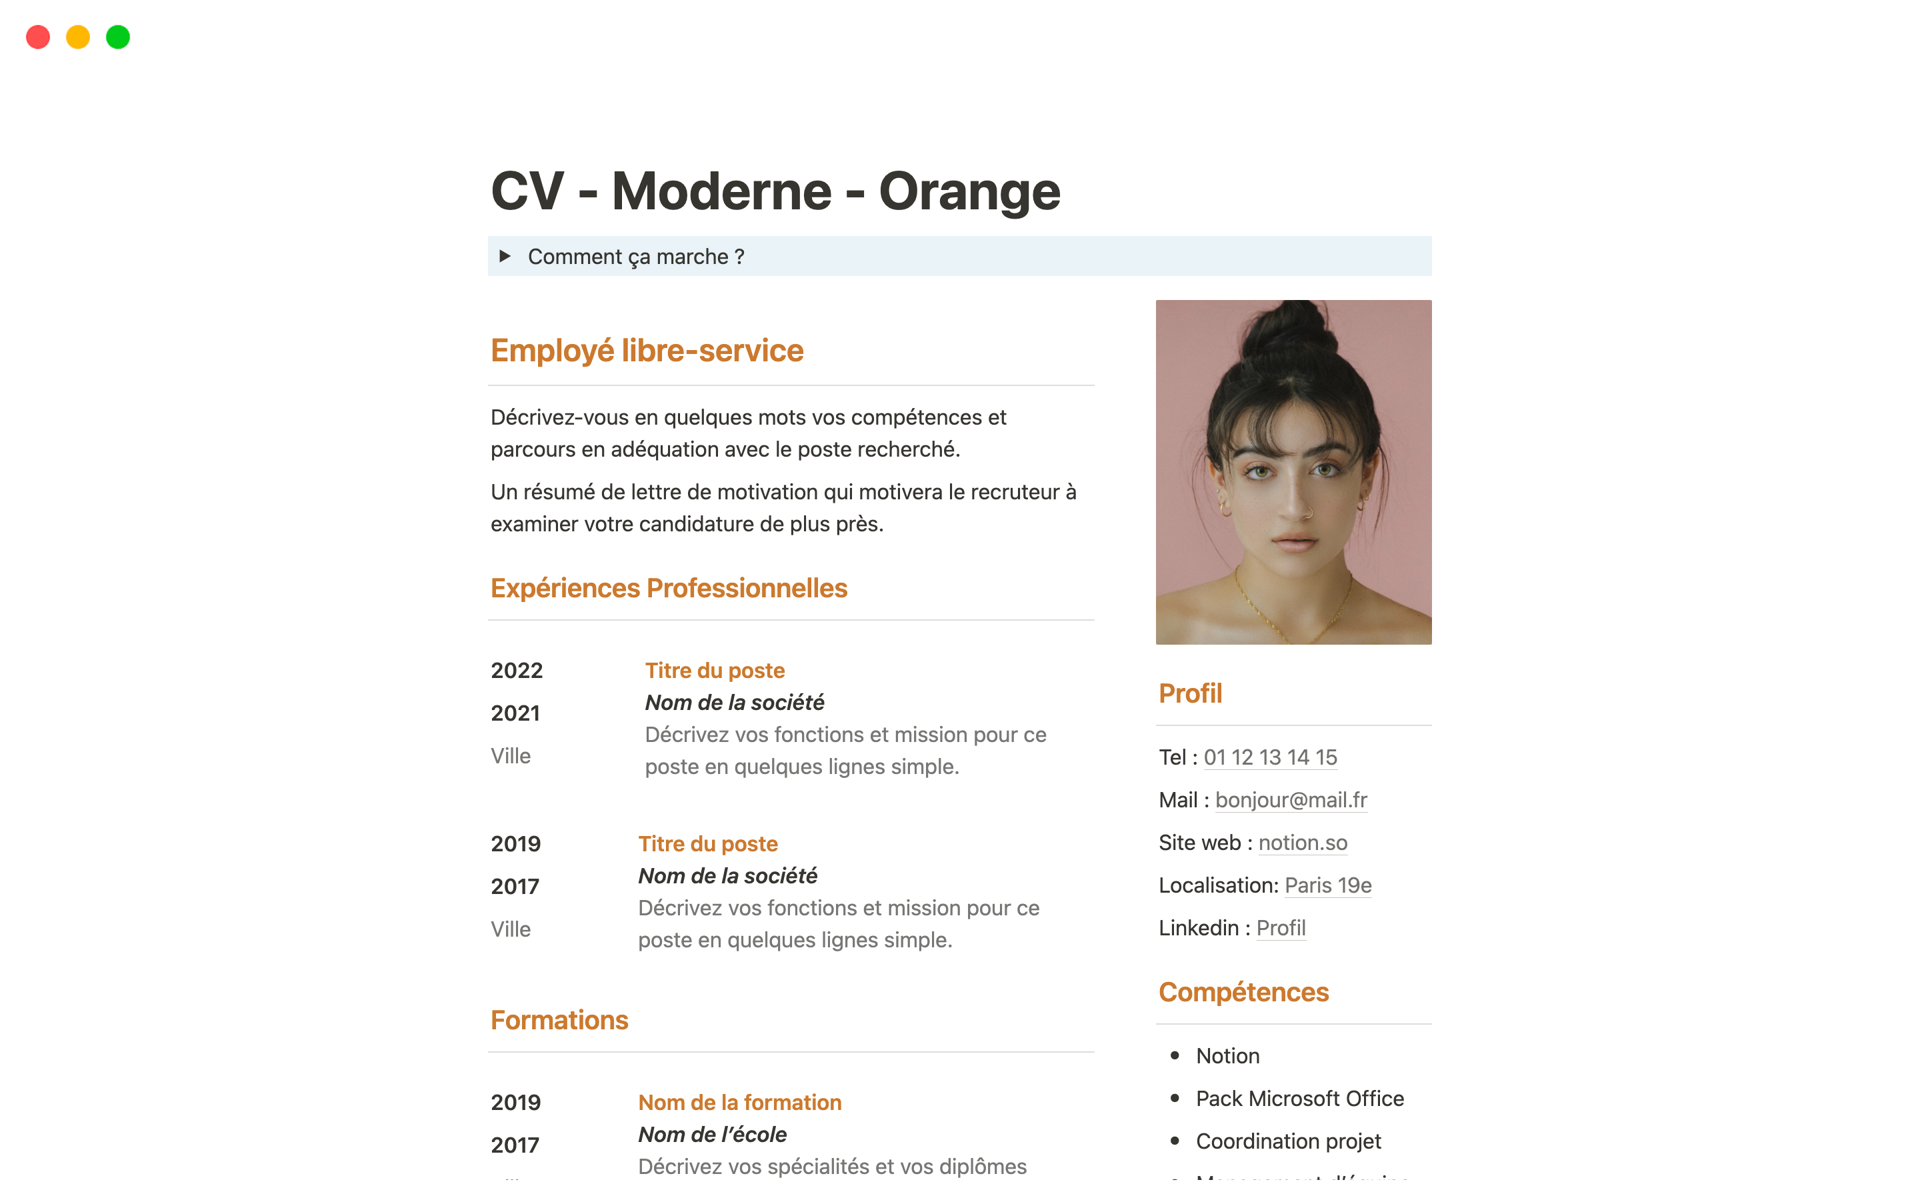 Vista previa de plantilla para CV - Moderne - Orange